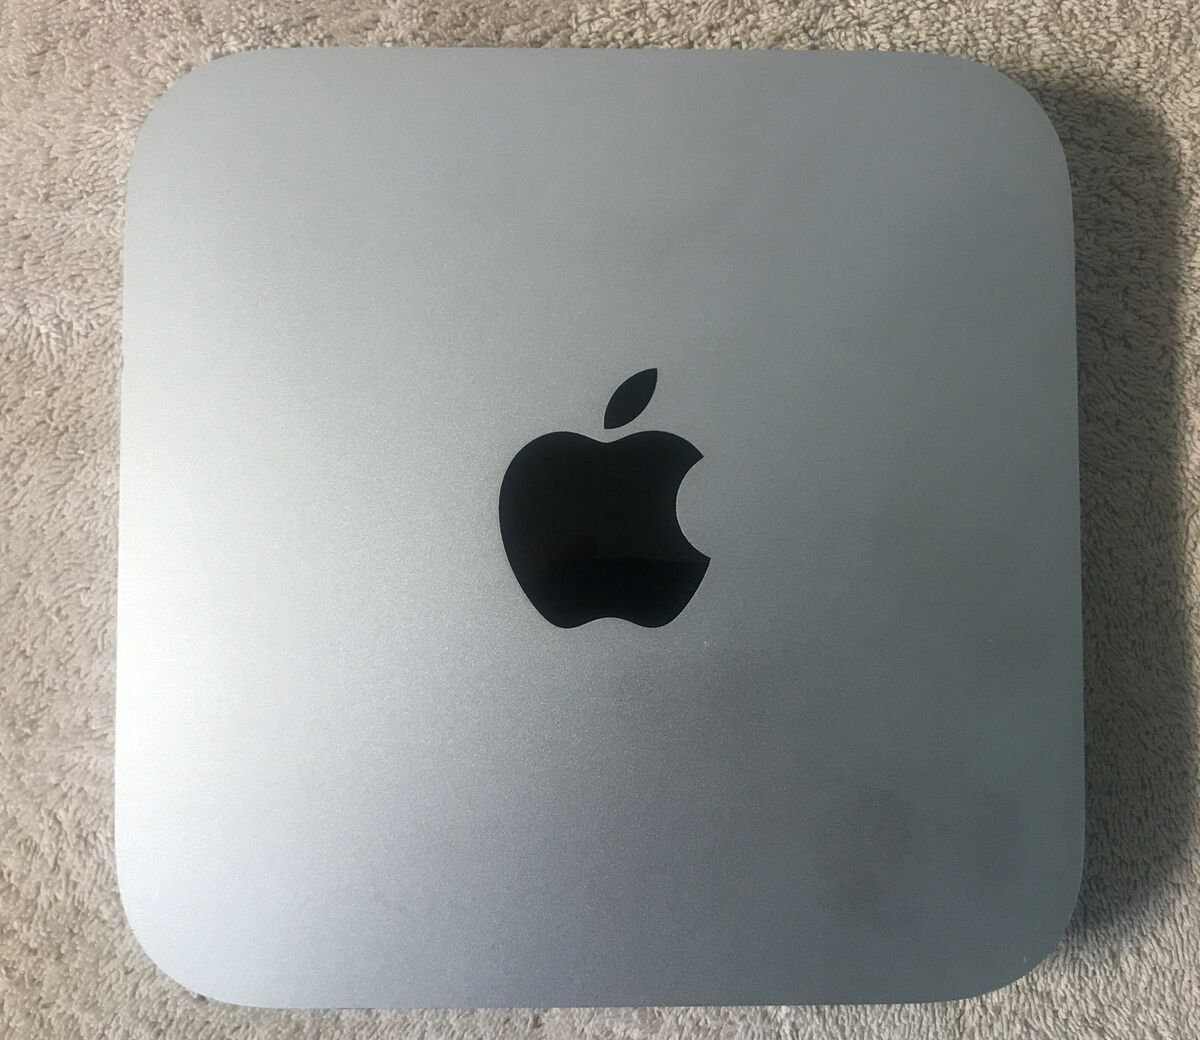 Apple Mac Mini 2011 Core i5 2.3GHz 4GB 500GB HDD MC815LL/A Grd A (Mid-2011)